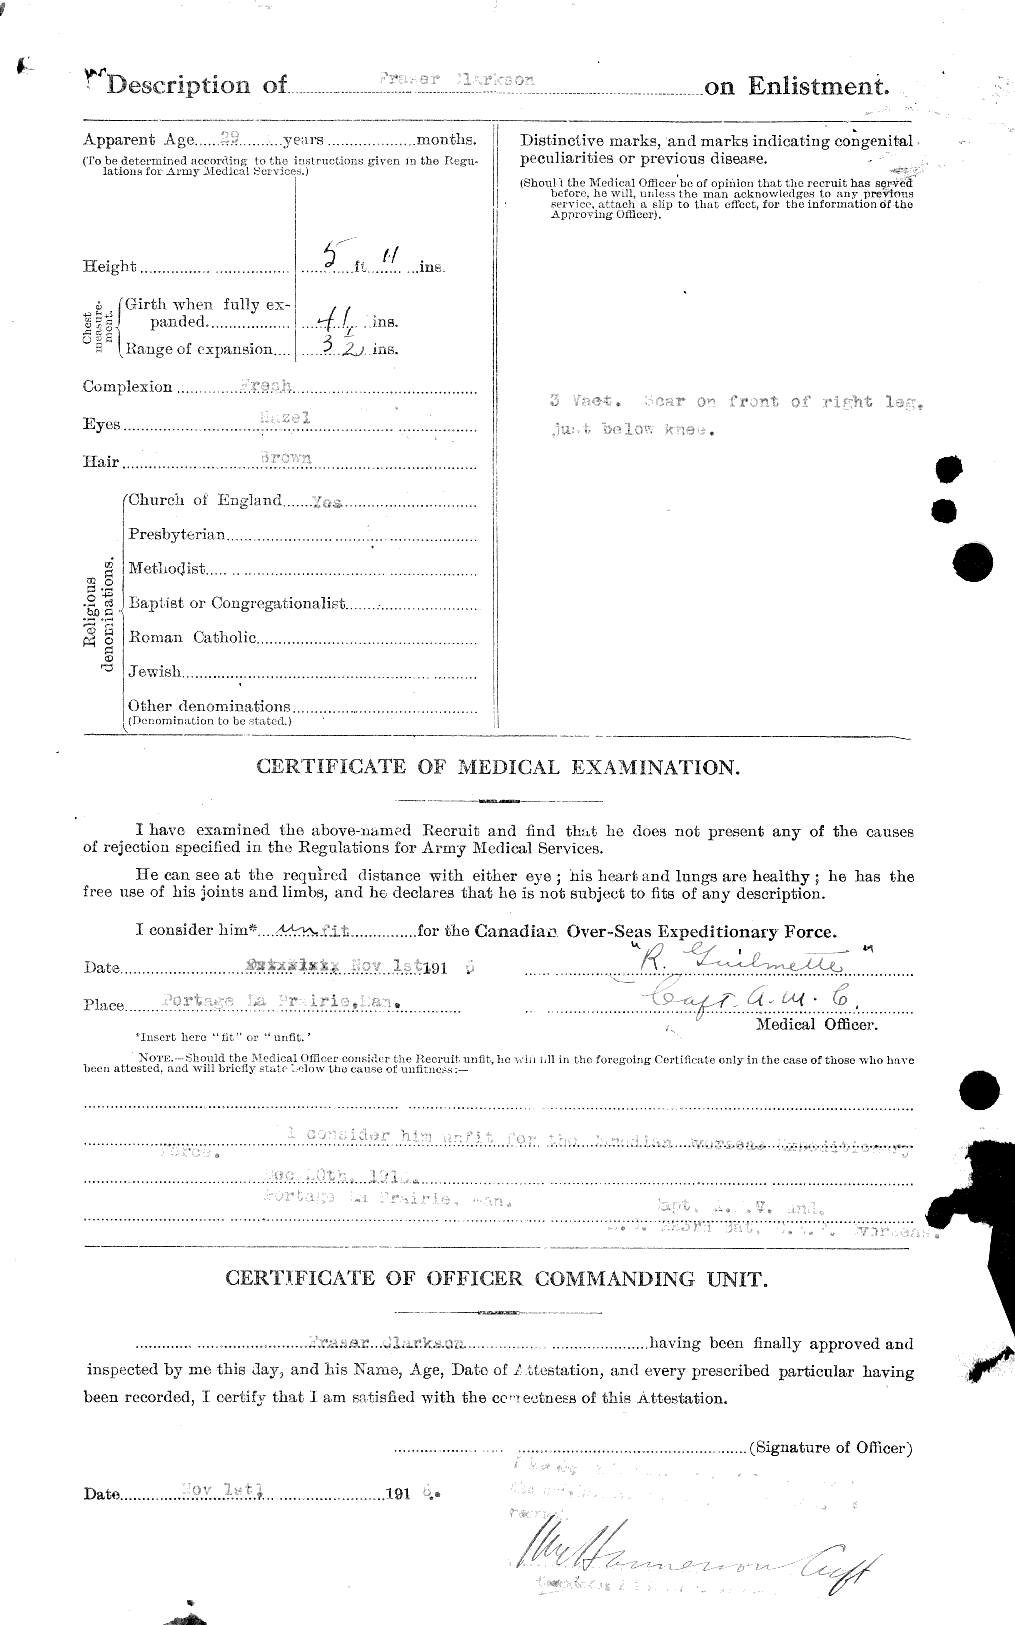 Dossiers du Personnel de la Première Guerre mondiale - CEC 023638b